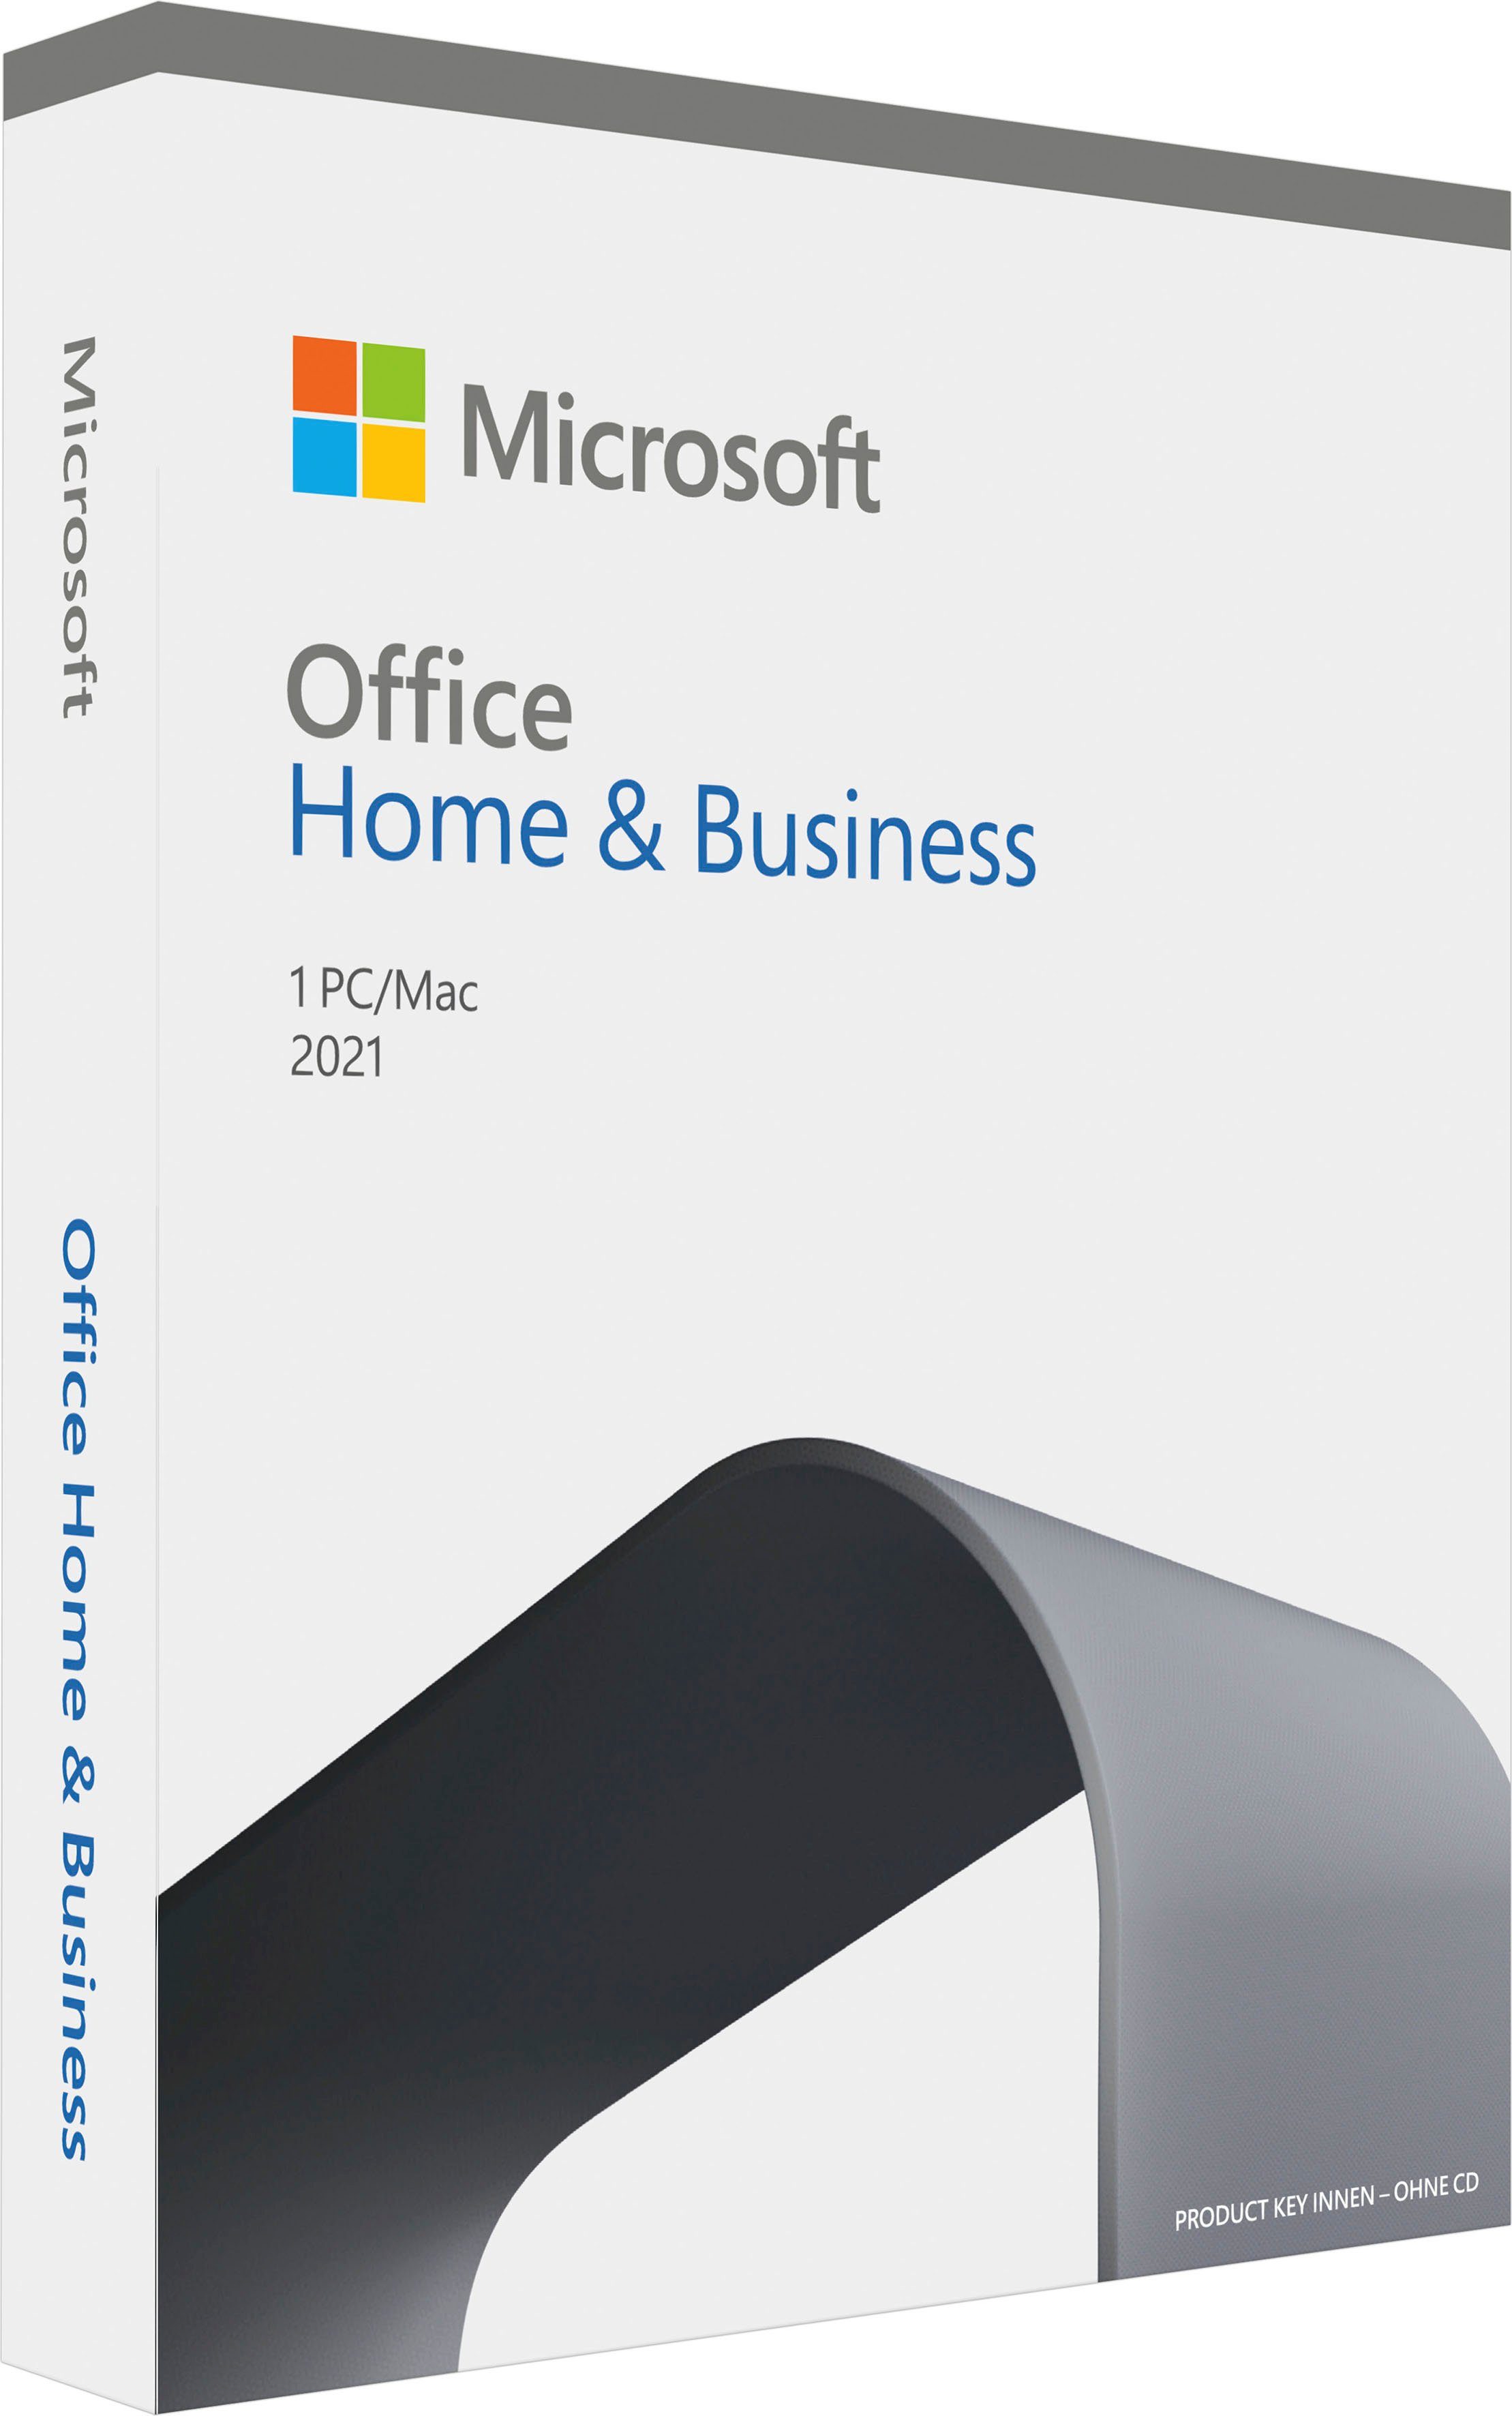 Lizenzschlüssel) Home Office Microsoft & 2021 (Officeprogramm, Business